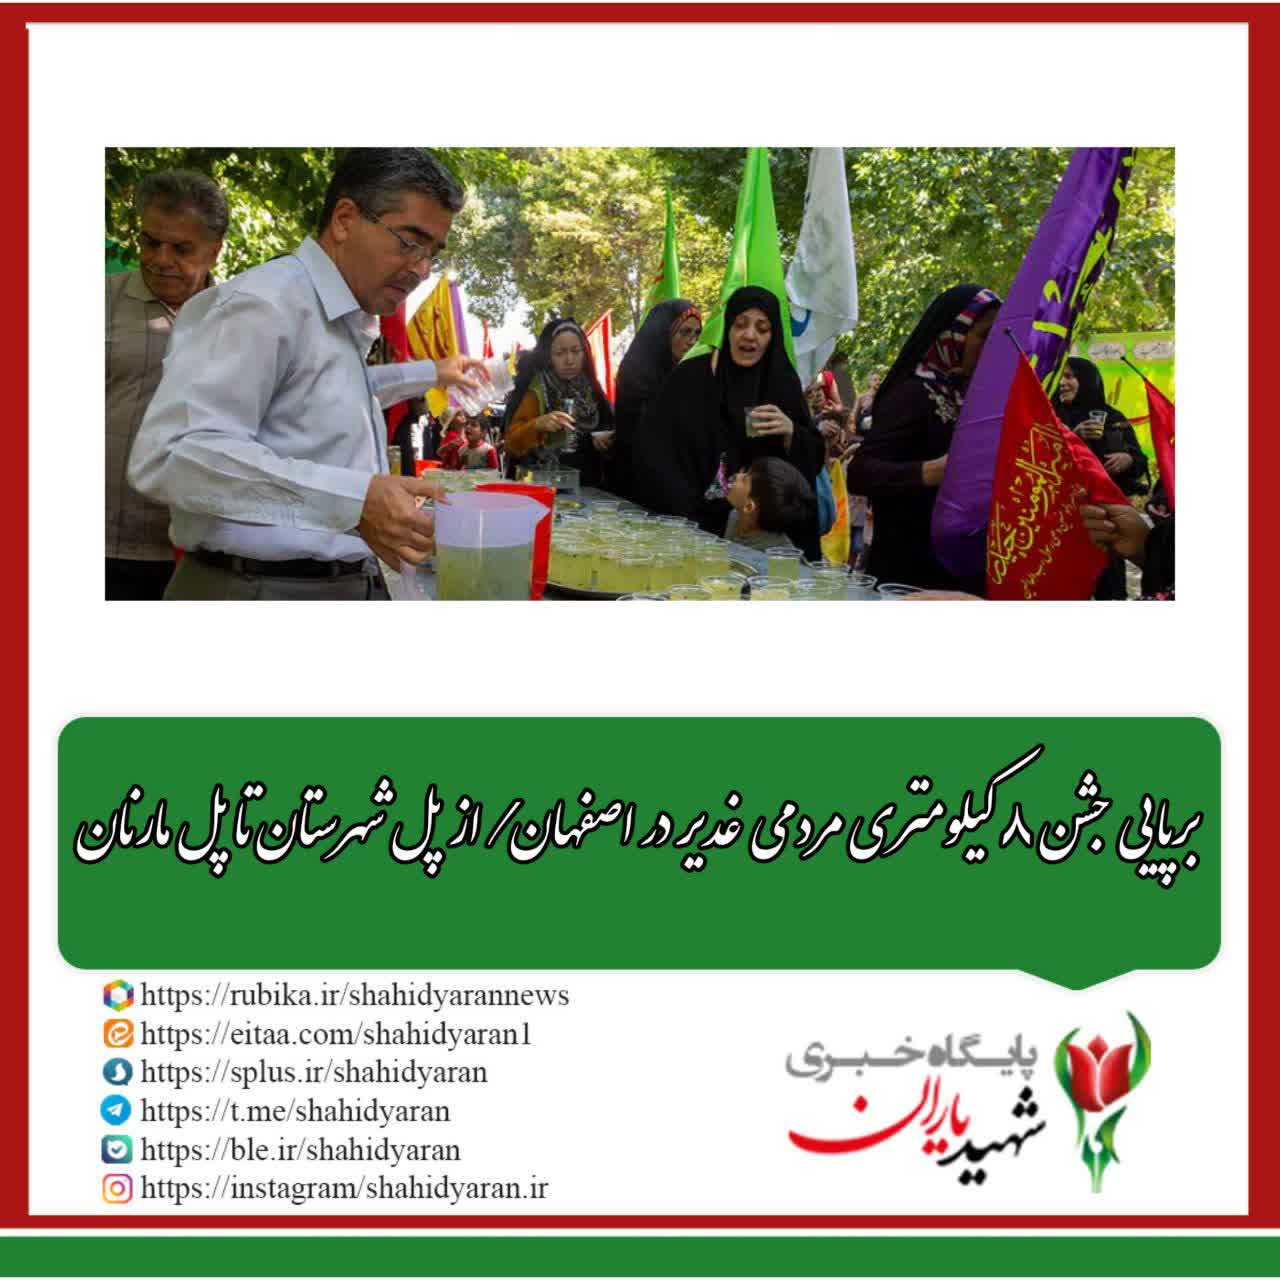 برپایی جشن ۸ کیلومتری مردمی غدیر در اصفهان/ از پل شهرستان تا پل مارنان